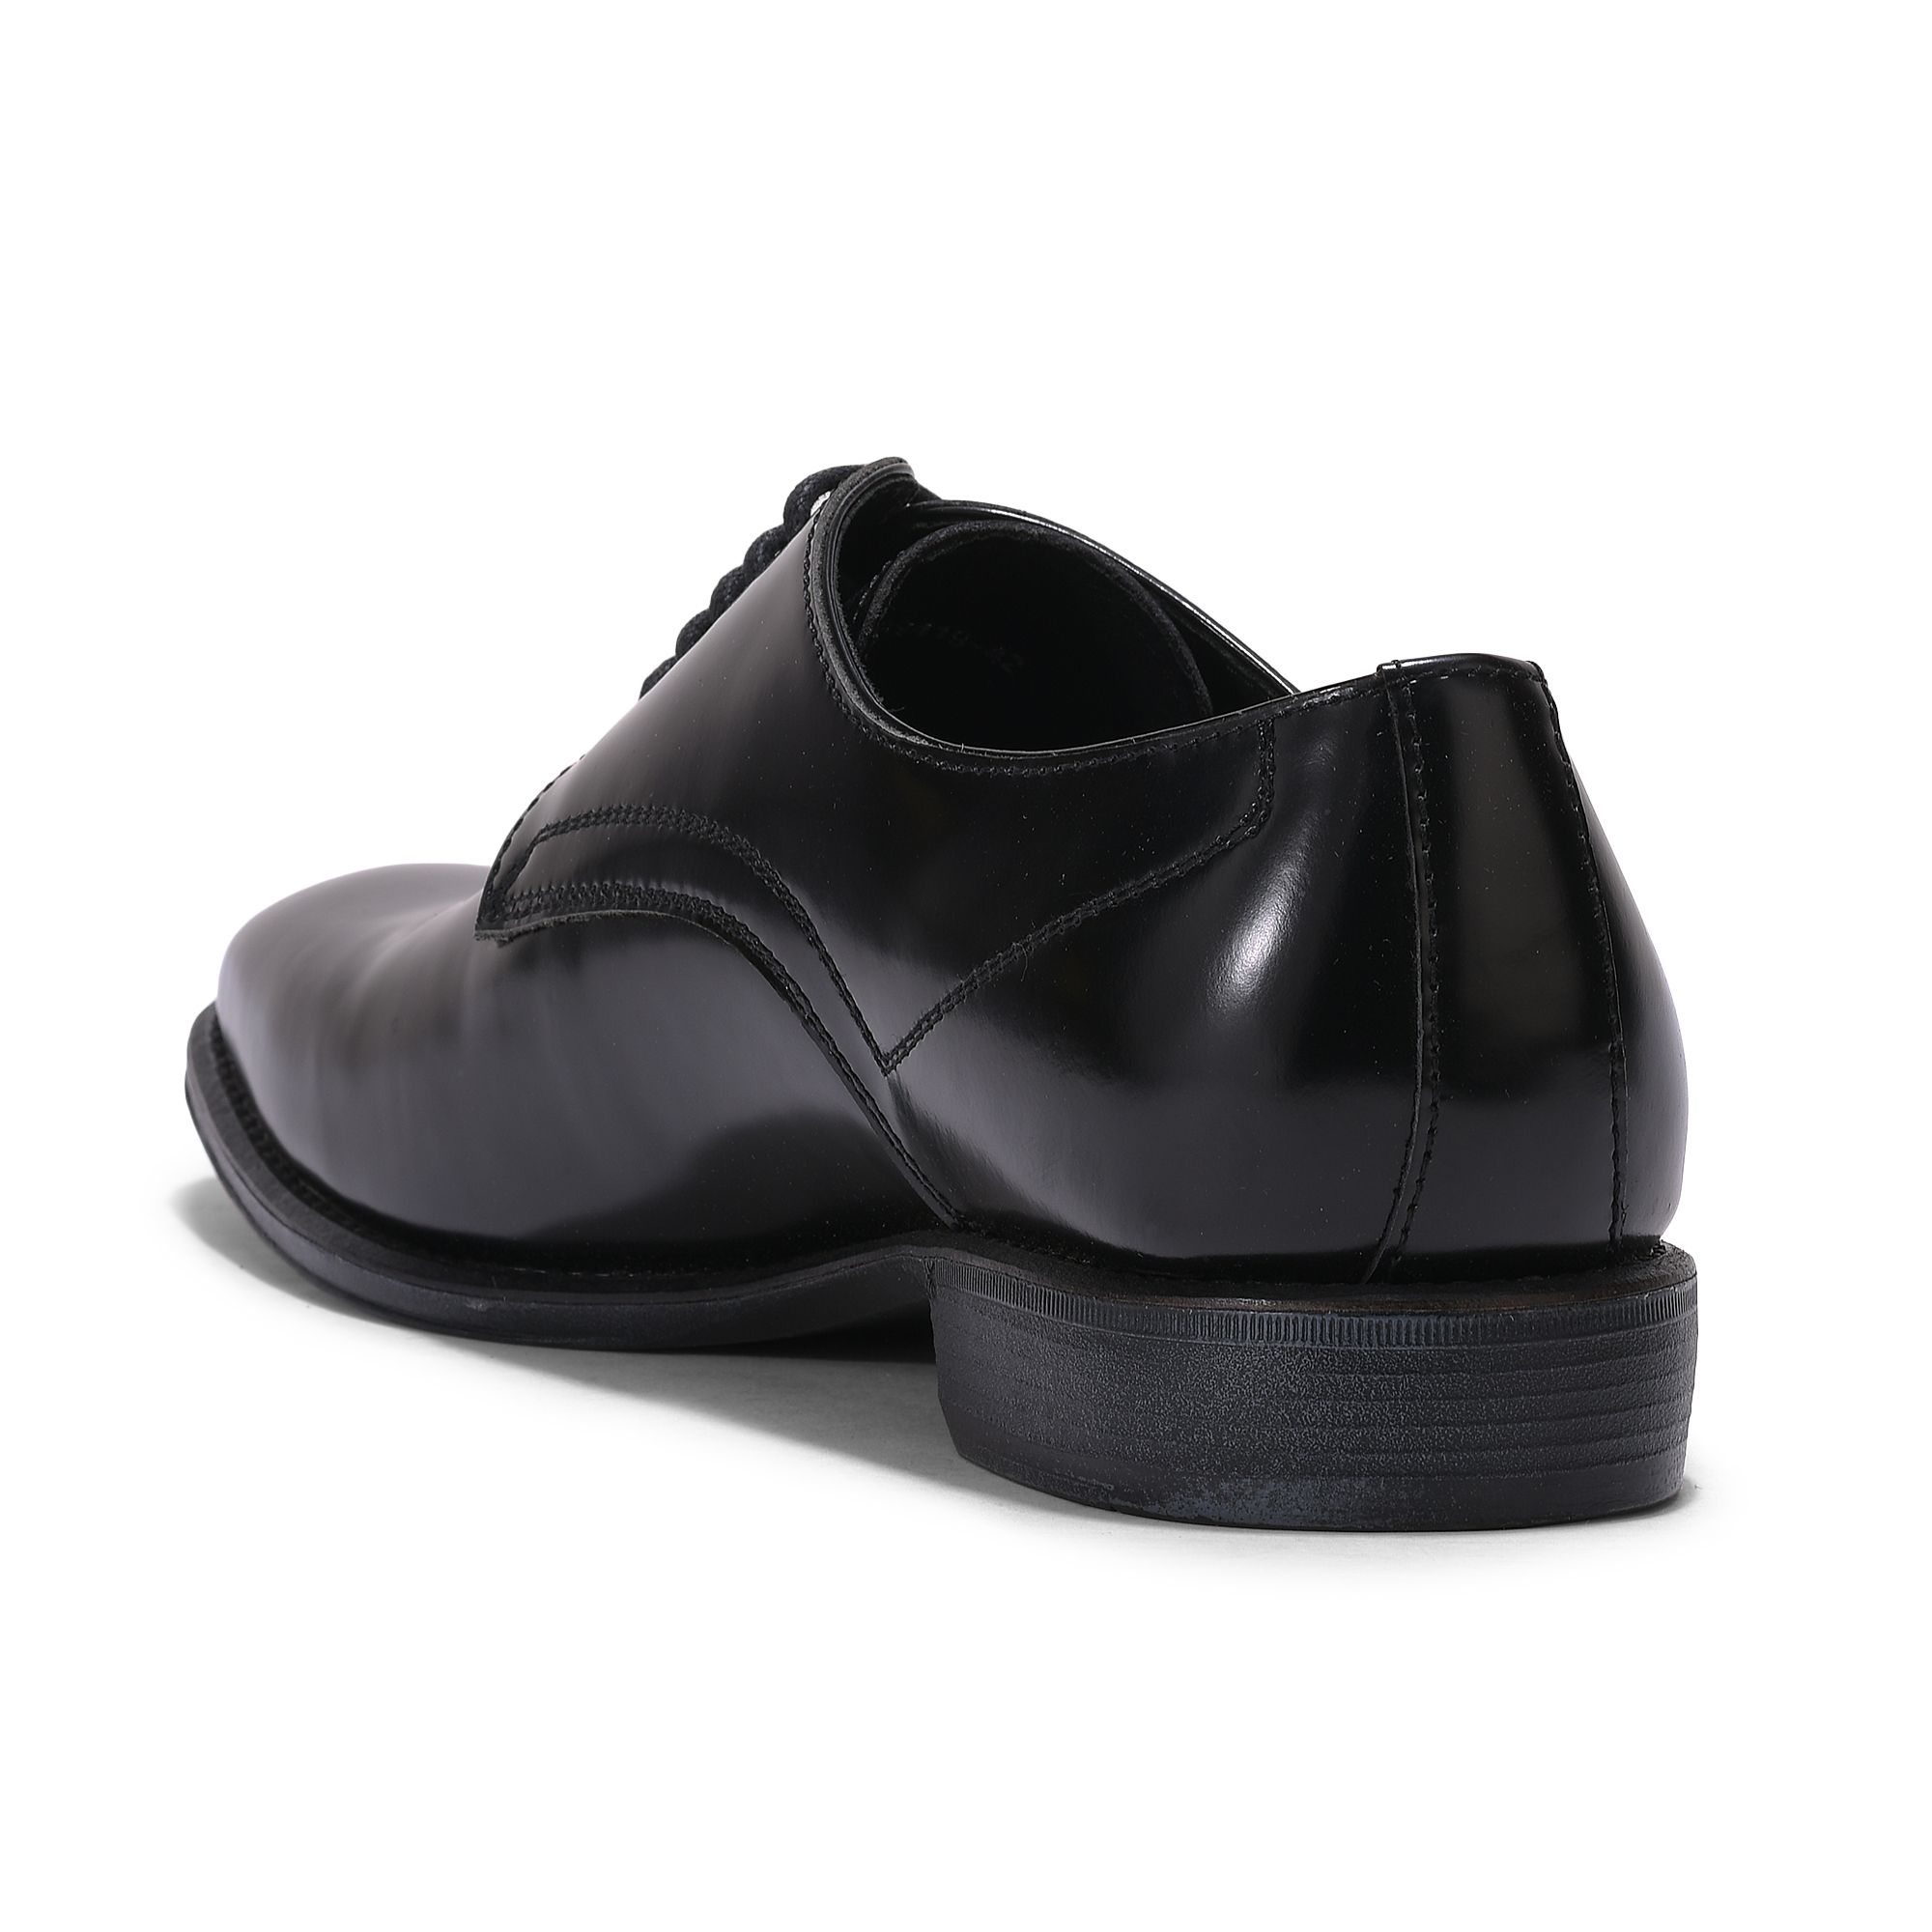 BLACK Derby shoes for men